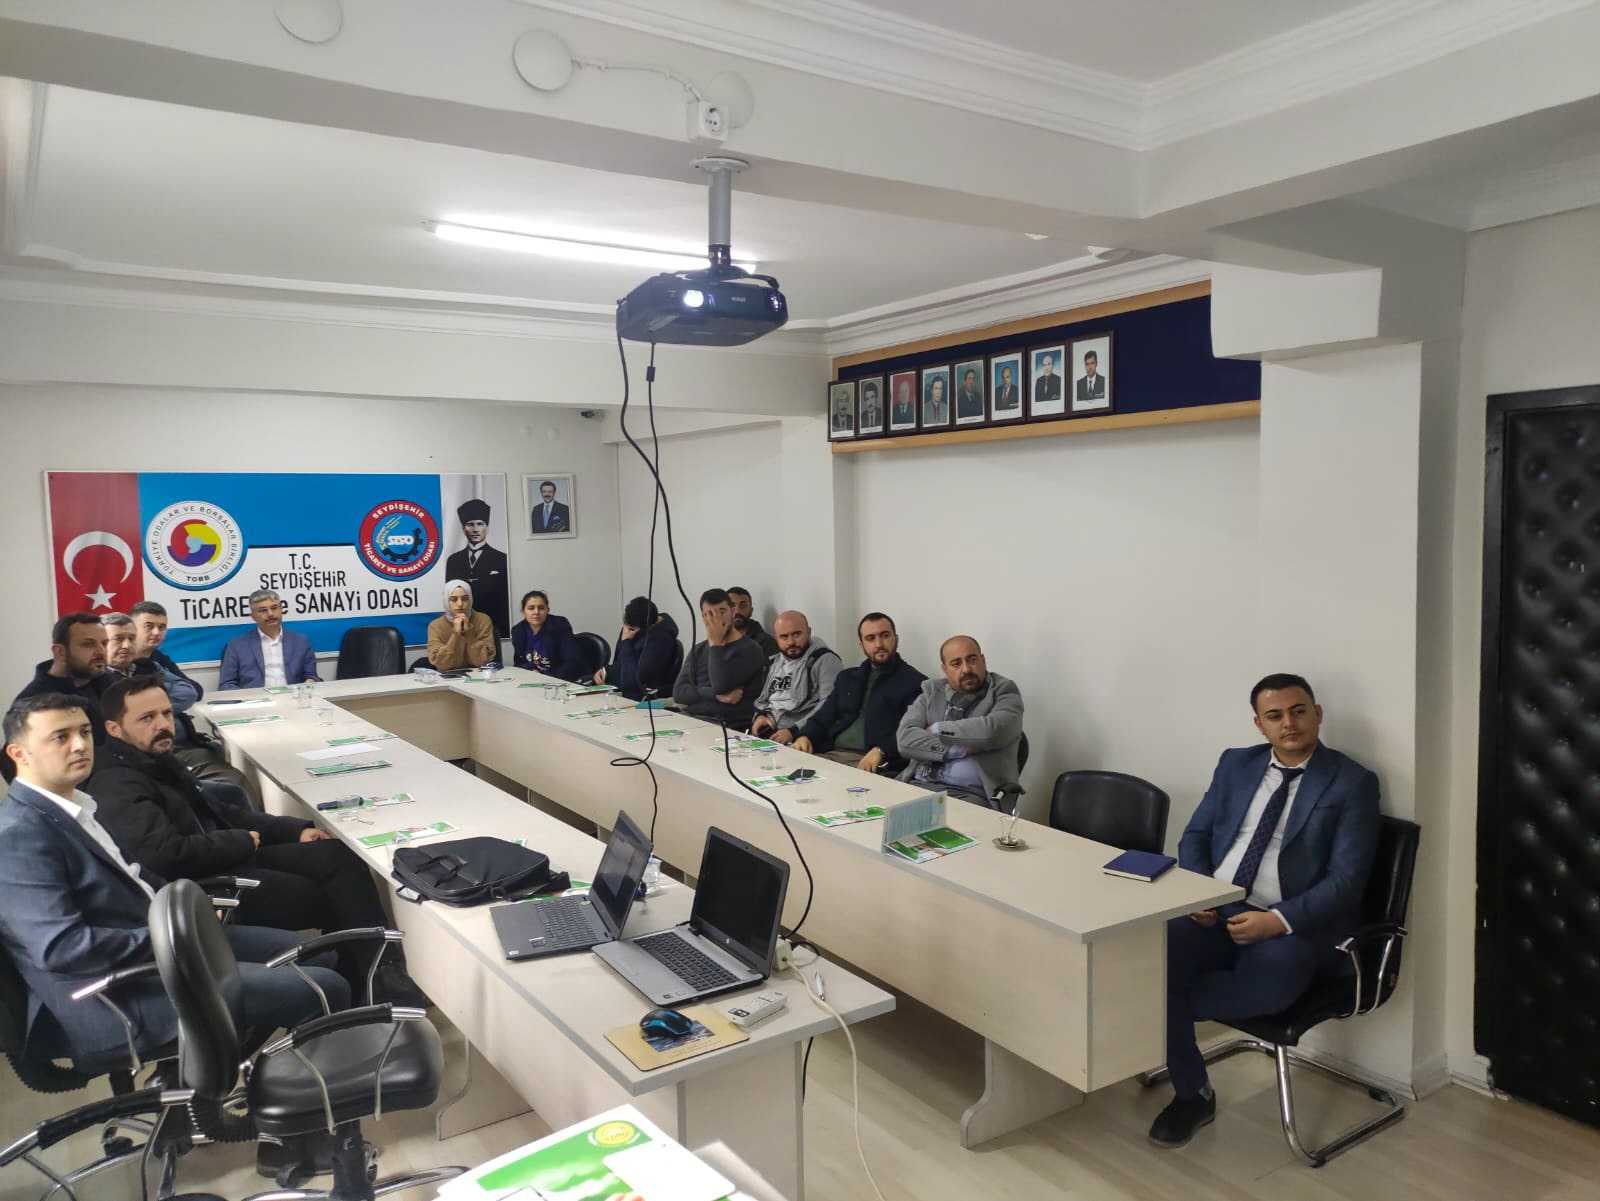 KTO Teknoloji ve Eğitim Kampüsü, Seydişehir’de Tanıtım ve Bilgilendirme Toplantısı Gerçekleştirdi.